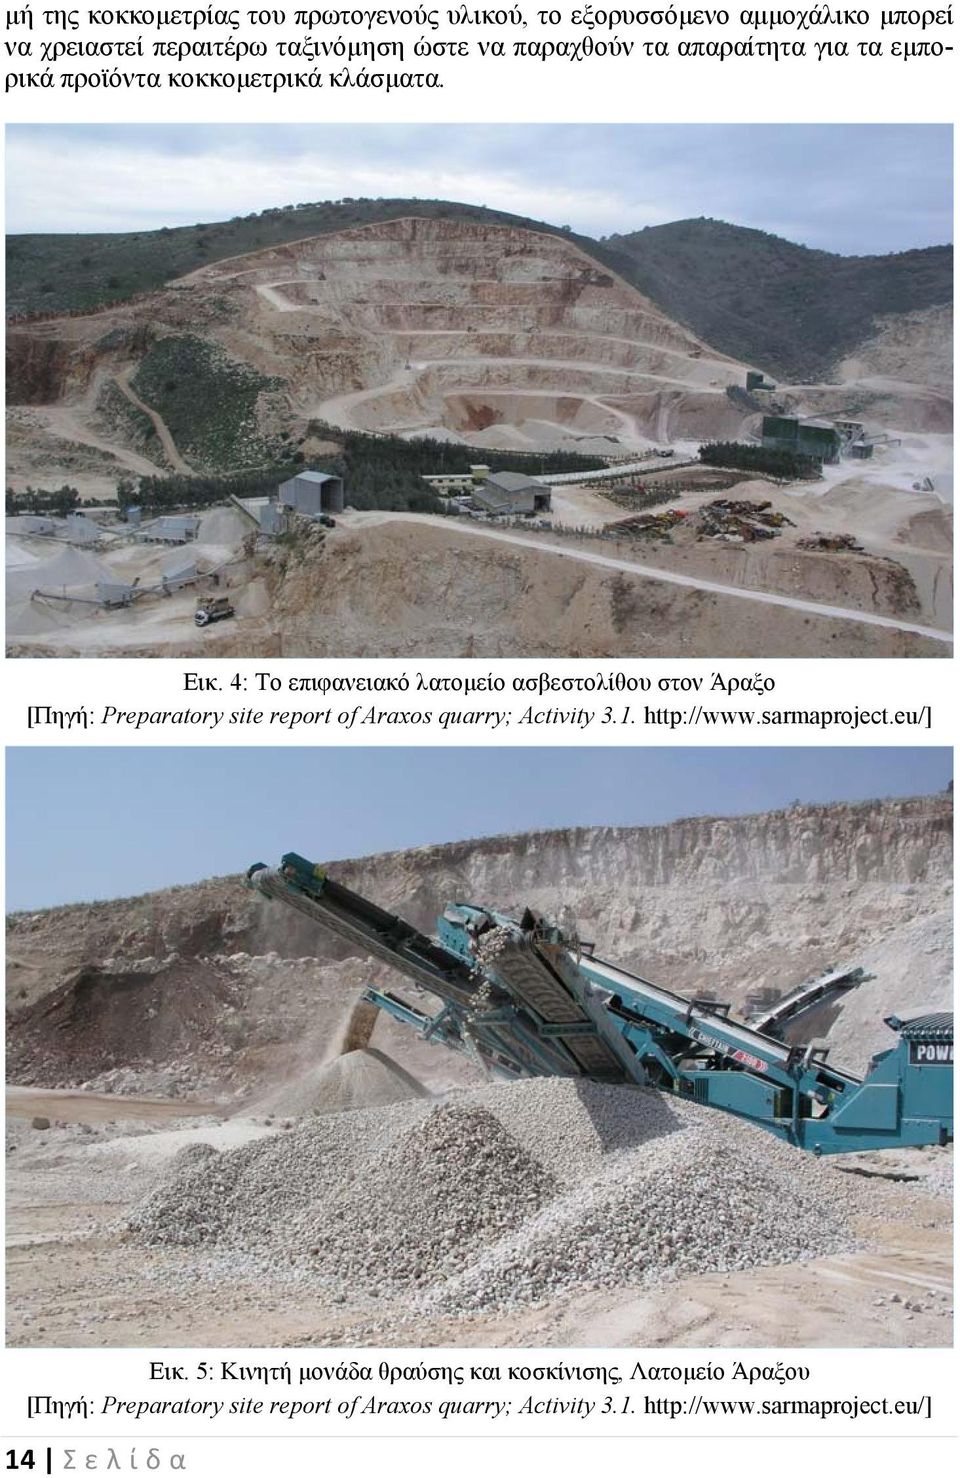 4: Το επιφανειακό λατομείο ασβεστολίθου στον Άραξο [Πηγή: Preparatory site report of Araxos quarry; Activity 3.1. http://www.